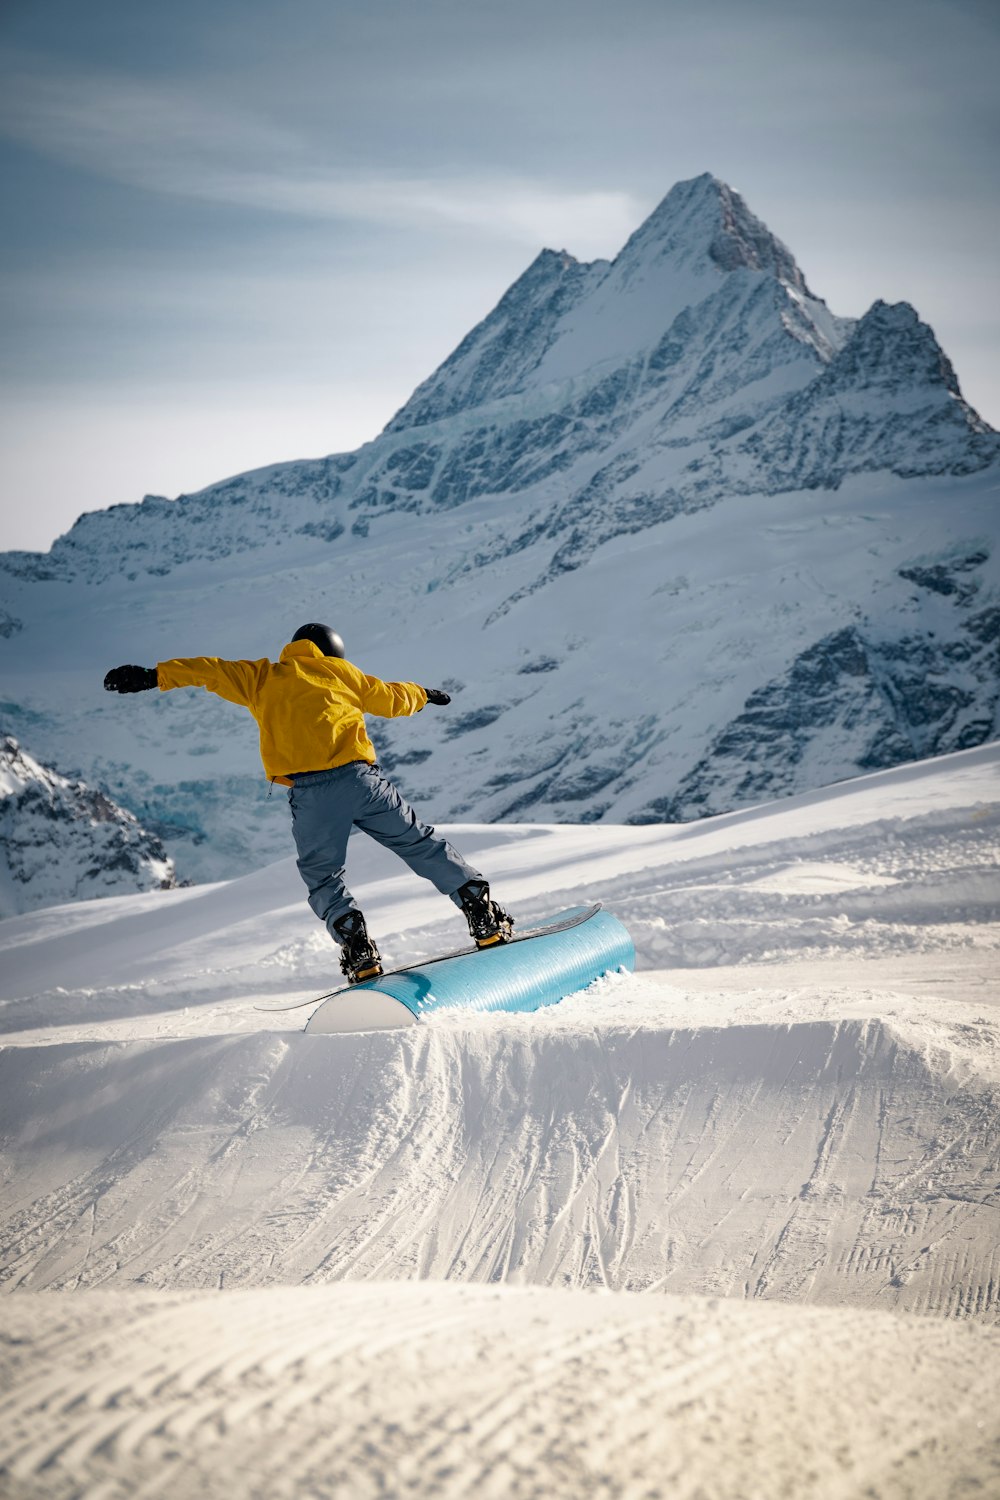 노란 재킷과 파란 바지를 입은 남자가 낮에 눈 덮인 산에서 파란 스노우보드를 타고 있다